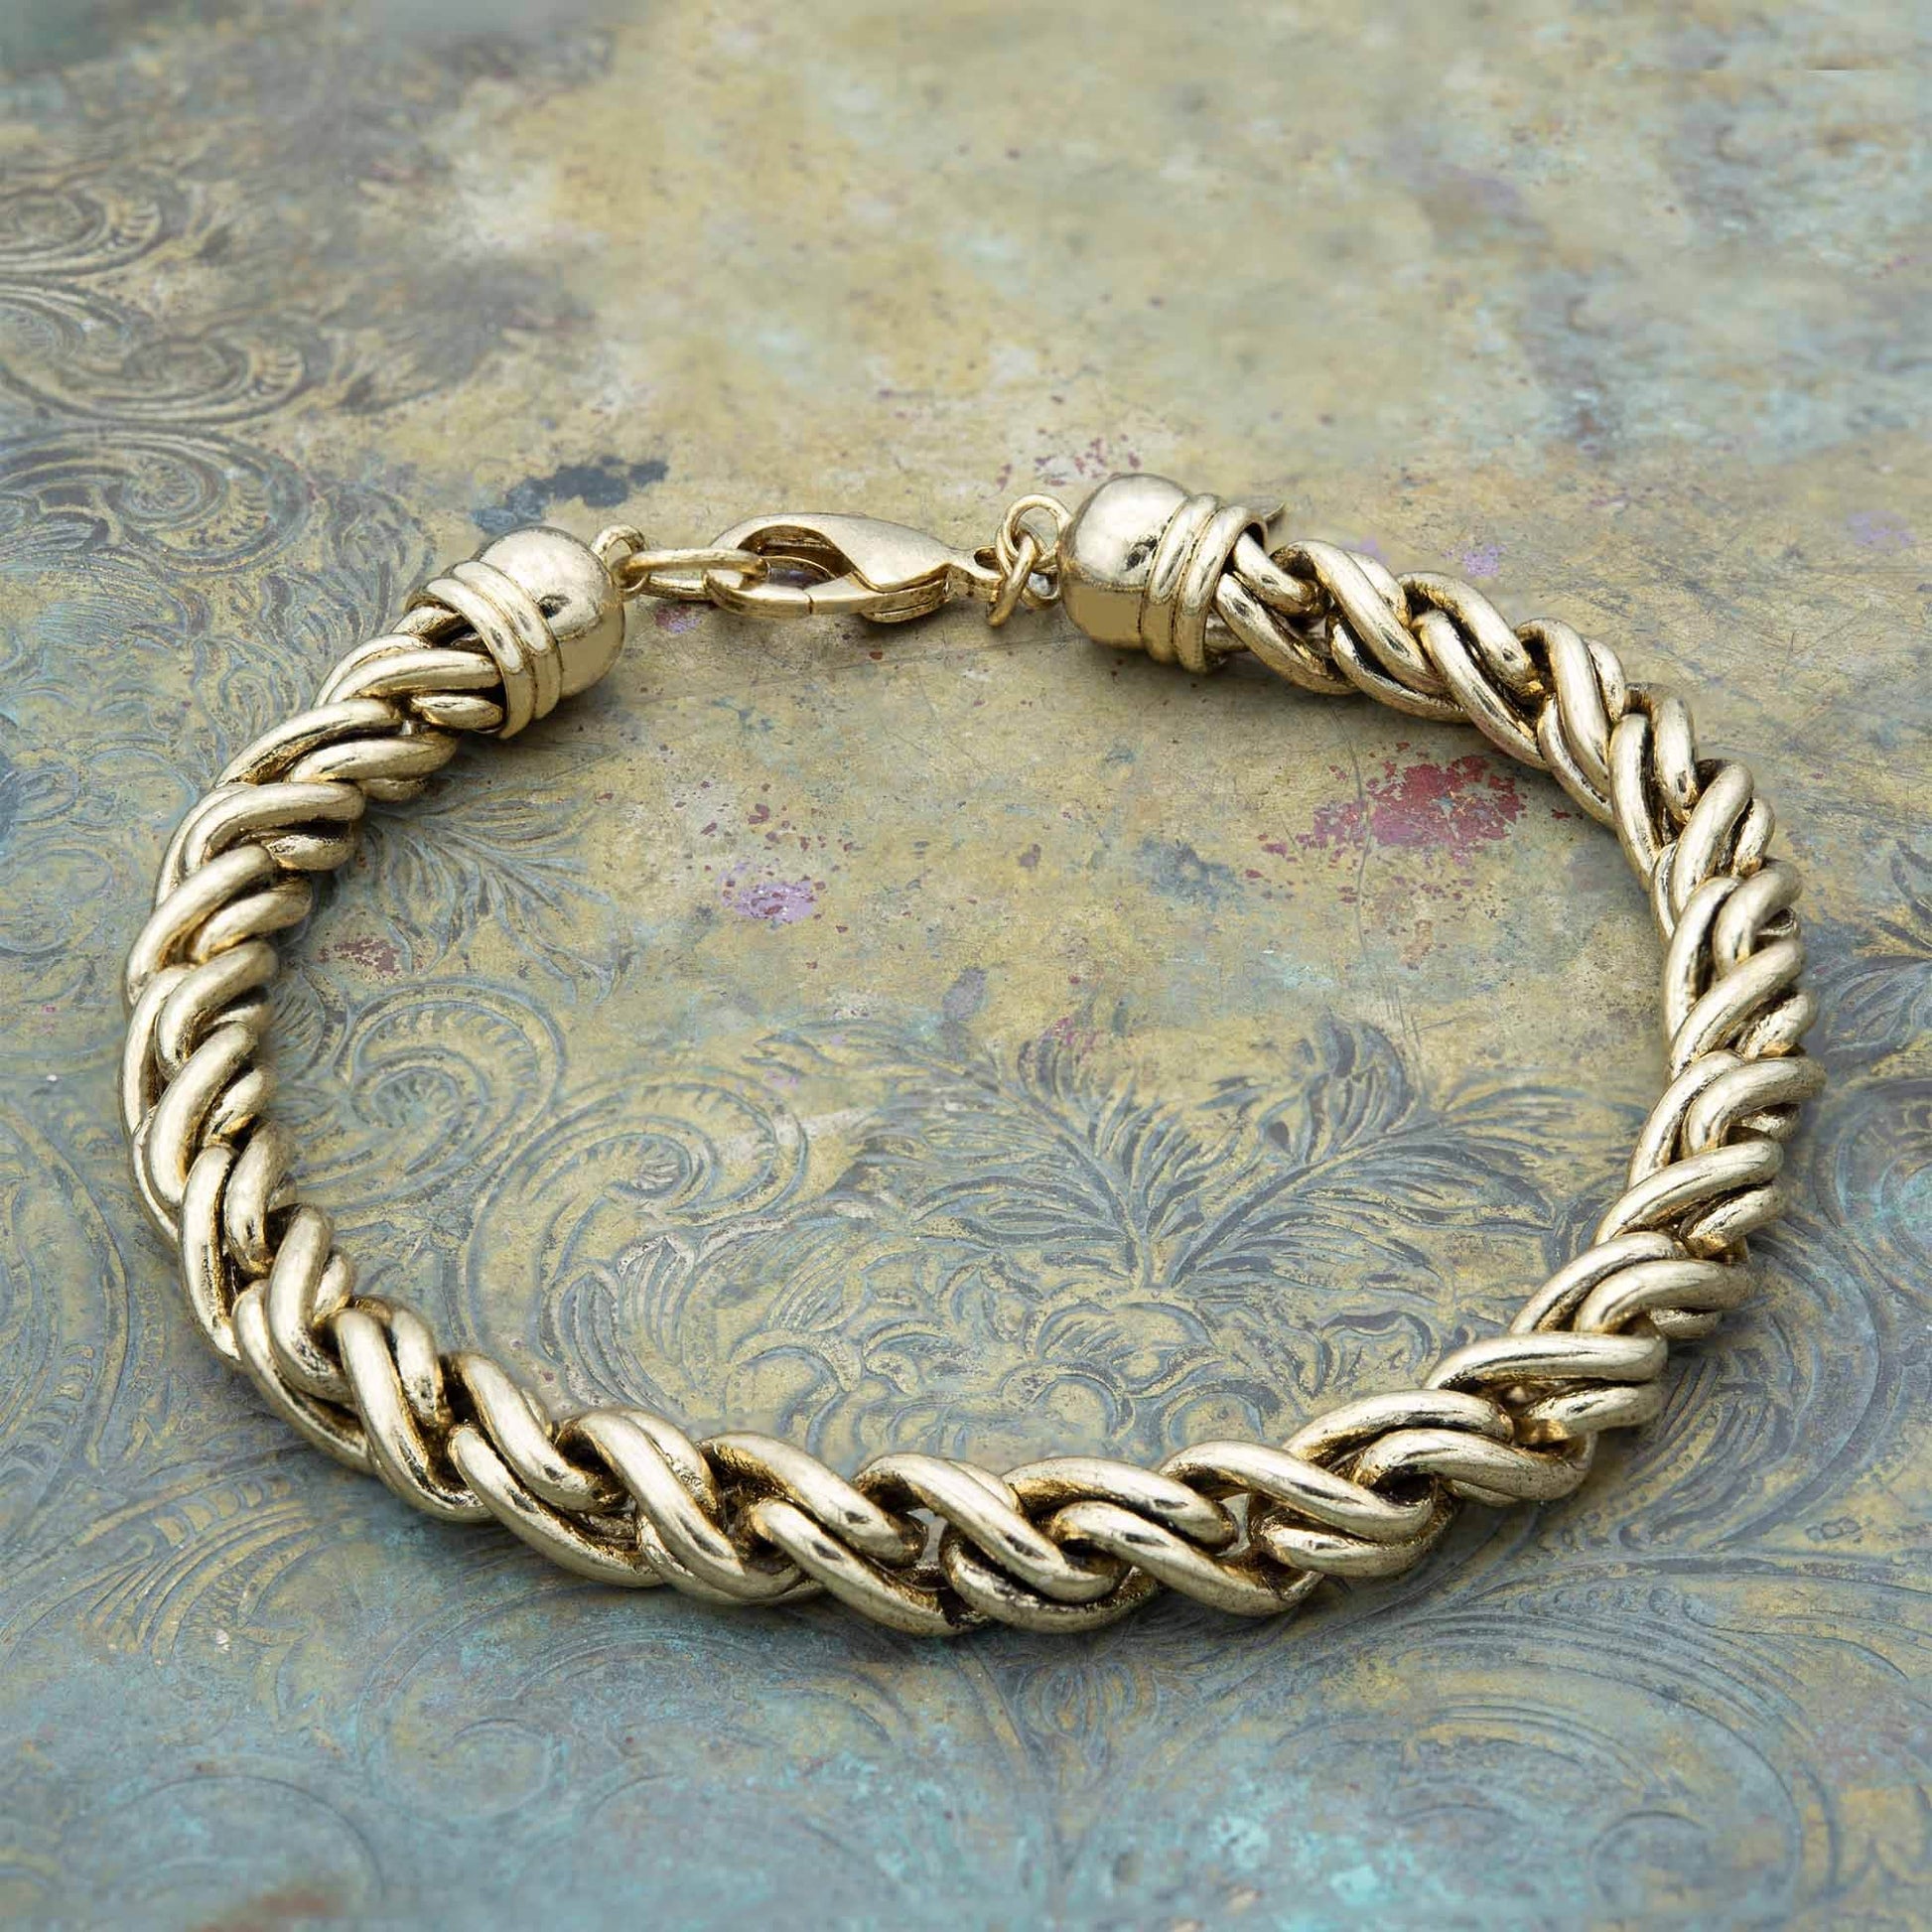 Antique Vintage Oscar de la Renta Gold Bracelet Twisted Rope Bracelets For Women - Limited Stock - Never Worn